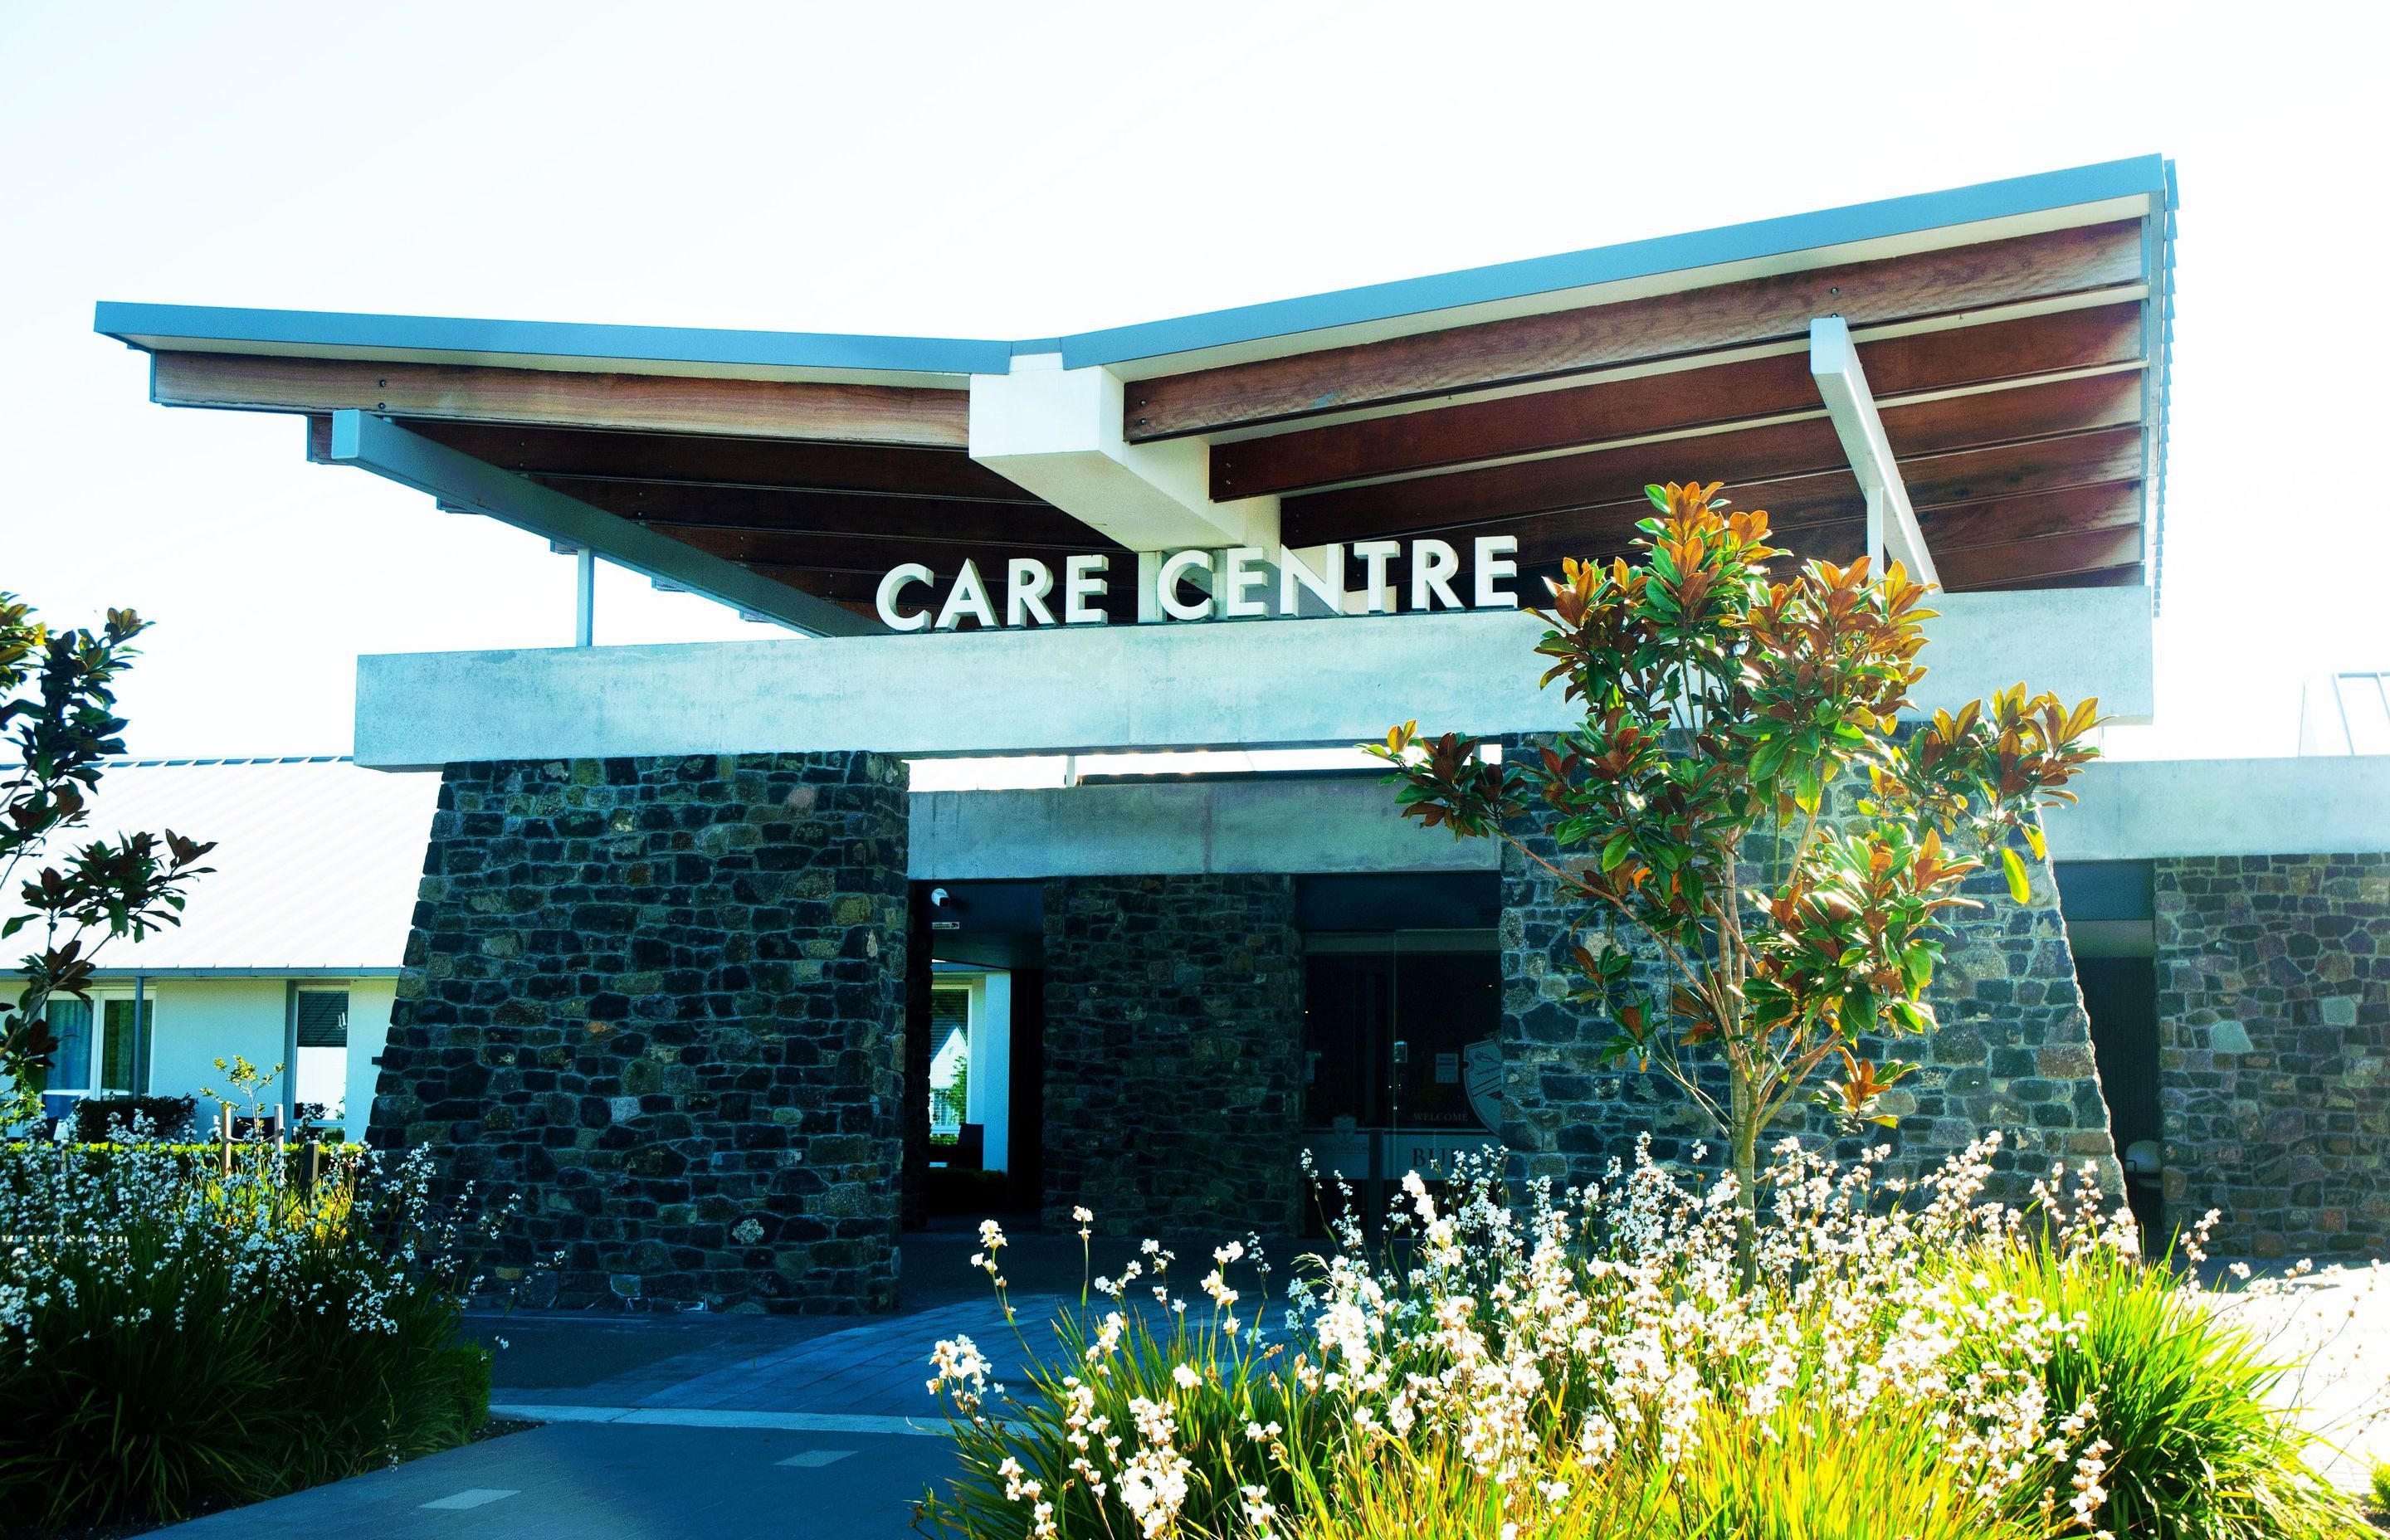 Burlington Rest Home - Care Centre